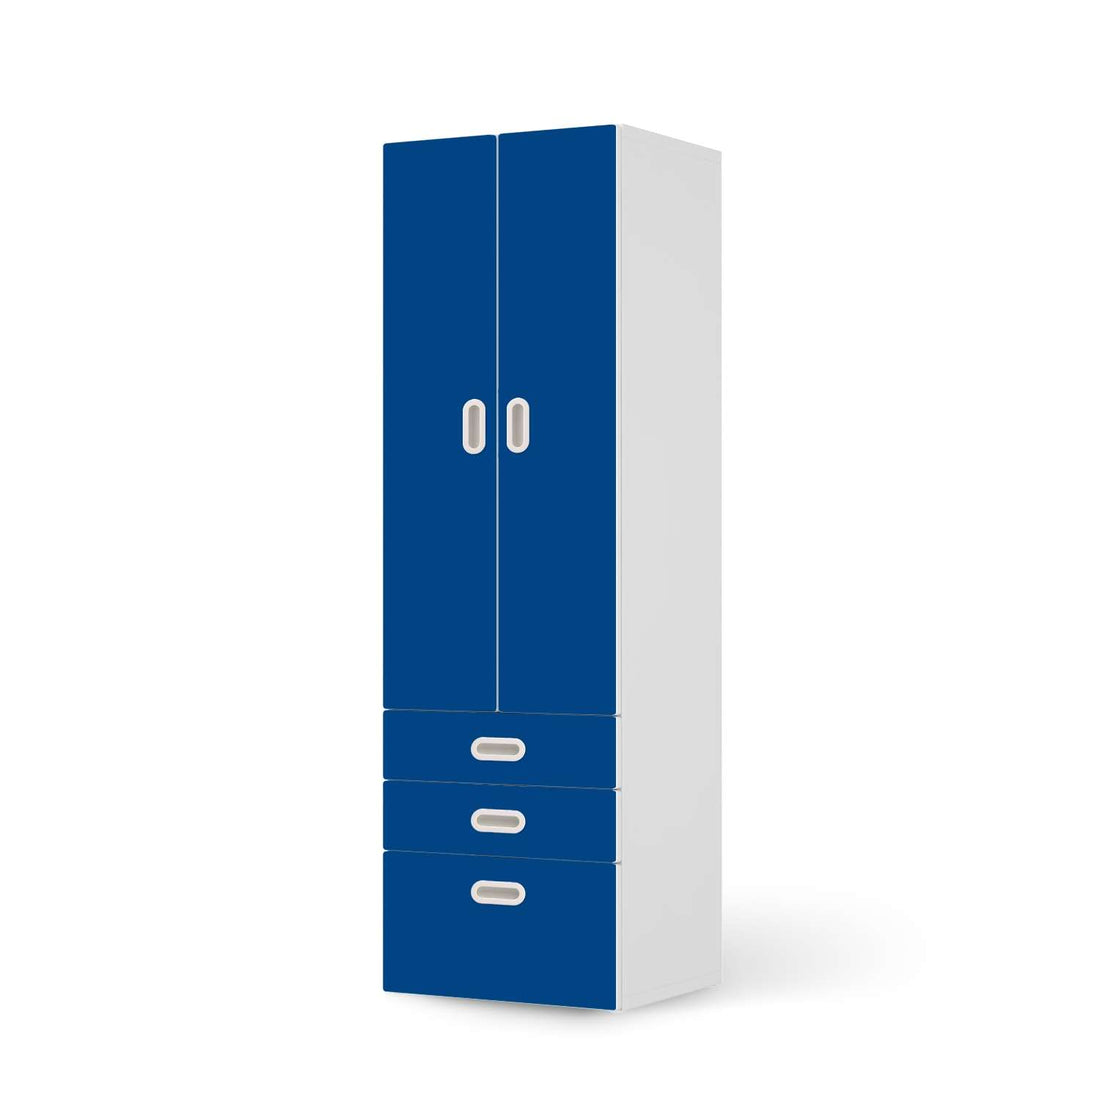 Klebefolie Blau Dark - IKEA Stuva / Fritids kombiniert - 3 Schubladen und 2 große Türen  - weiss